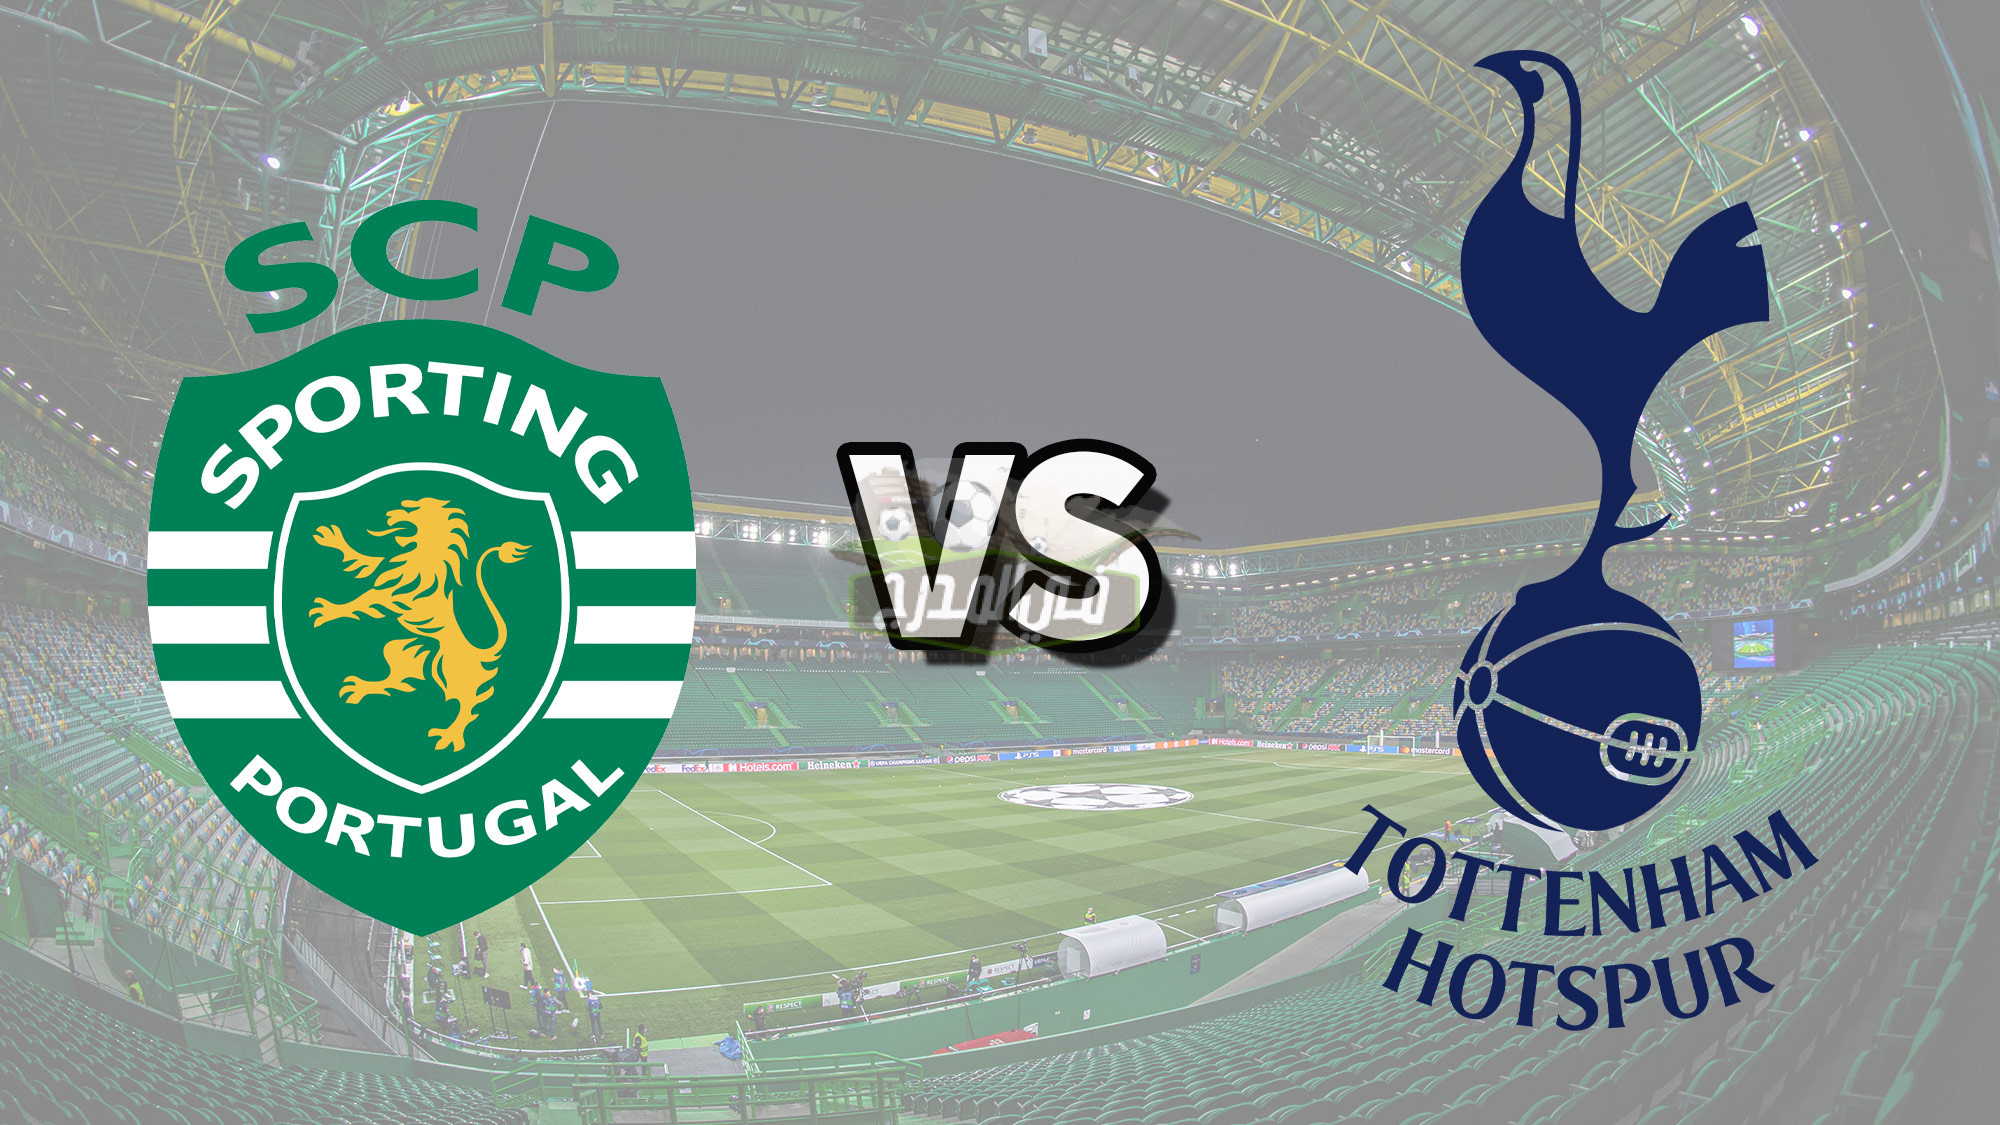 موعد مباراة توتنهام وسبورتنج لشبونة Tottenham vs Sporting Lisbon بدوري أبطال أوروبا والقنوات الناقلة